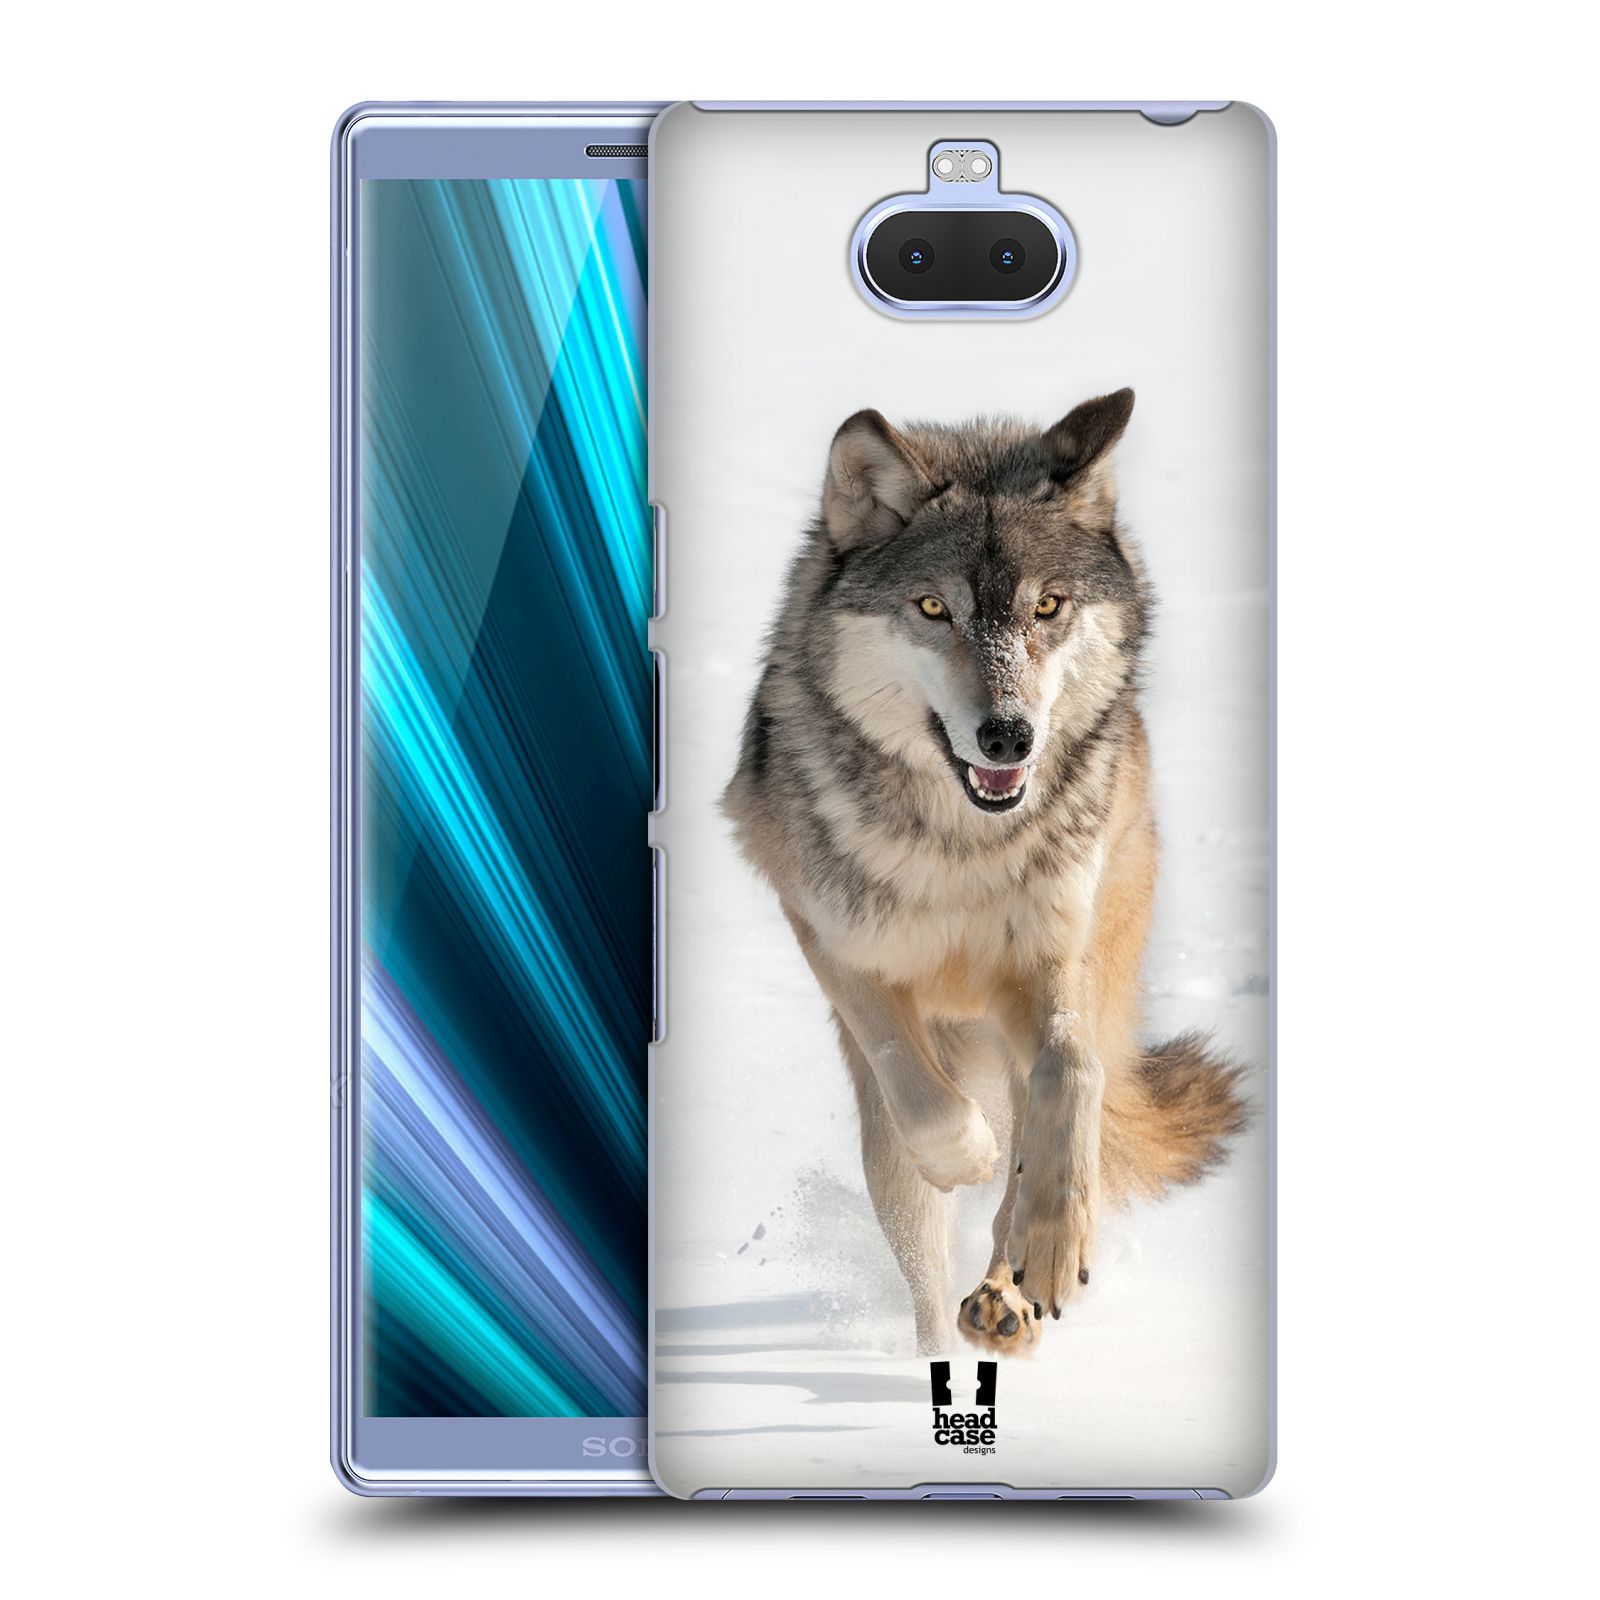 Zadní obal pro mobil Sony Xperia 10 ULTRA - HEAD CASE - Svět zvířat divoký vlk